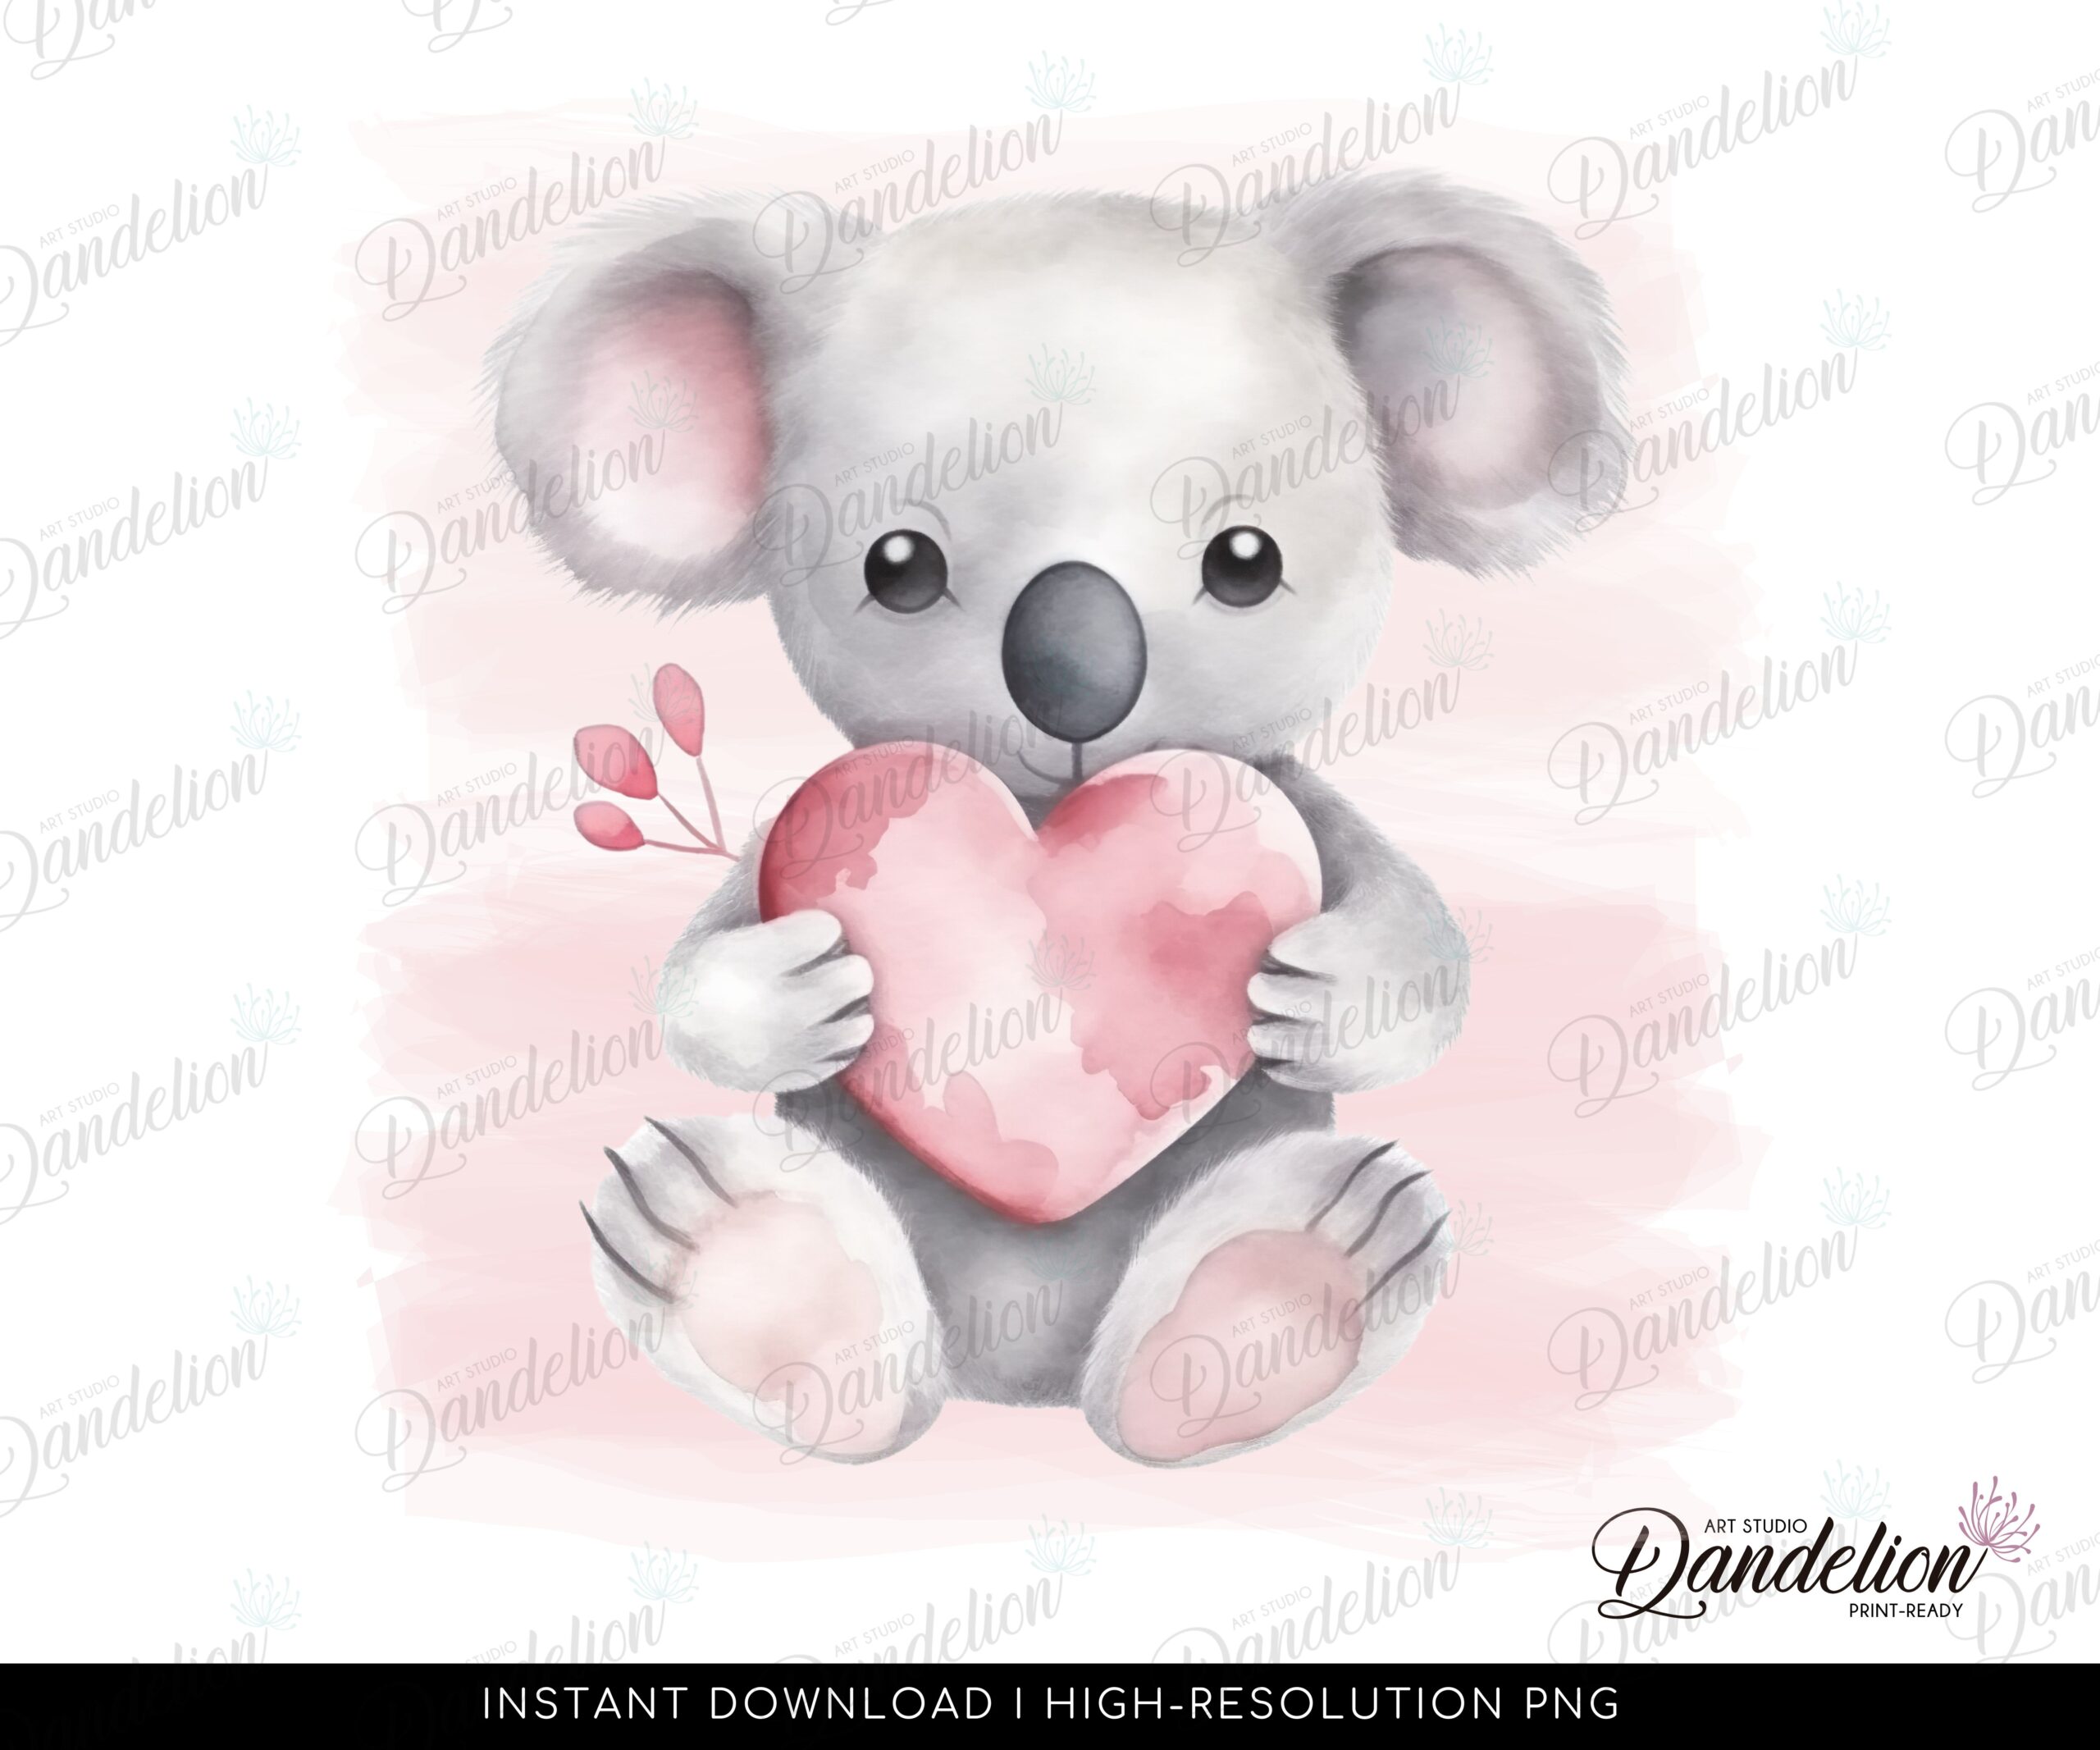 PNG File - Sublimation Design: Cute Watercolor Koala Holding a Heart - Koala Shirt, Koala Wallart, Heart & Love Cute Koala - Instant Access